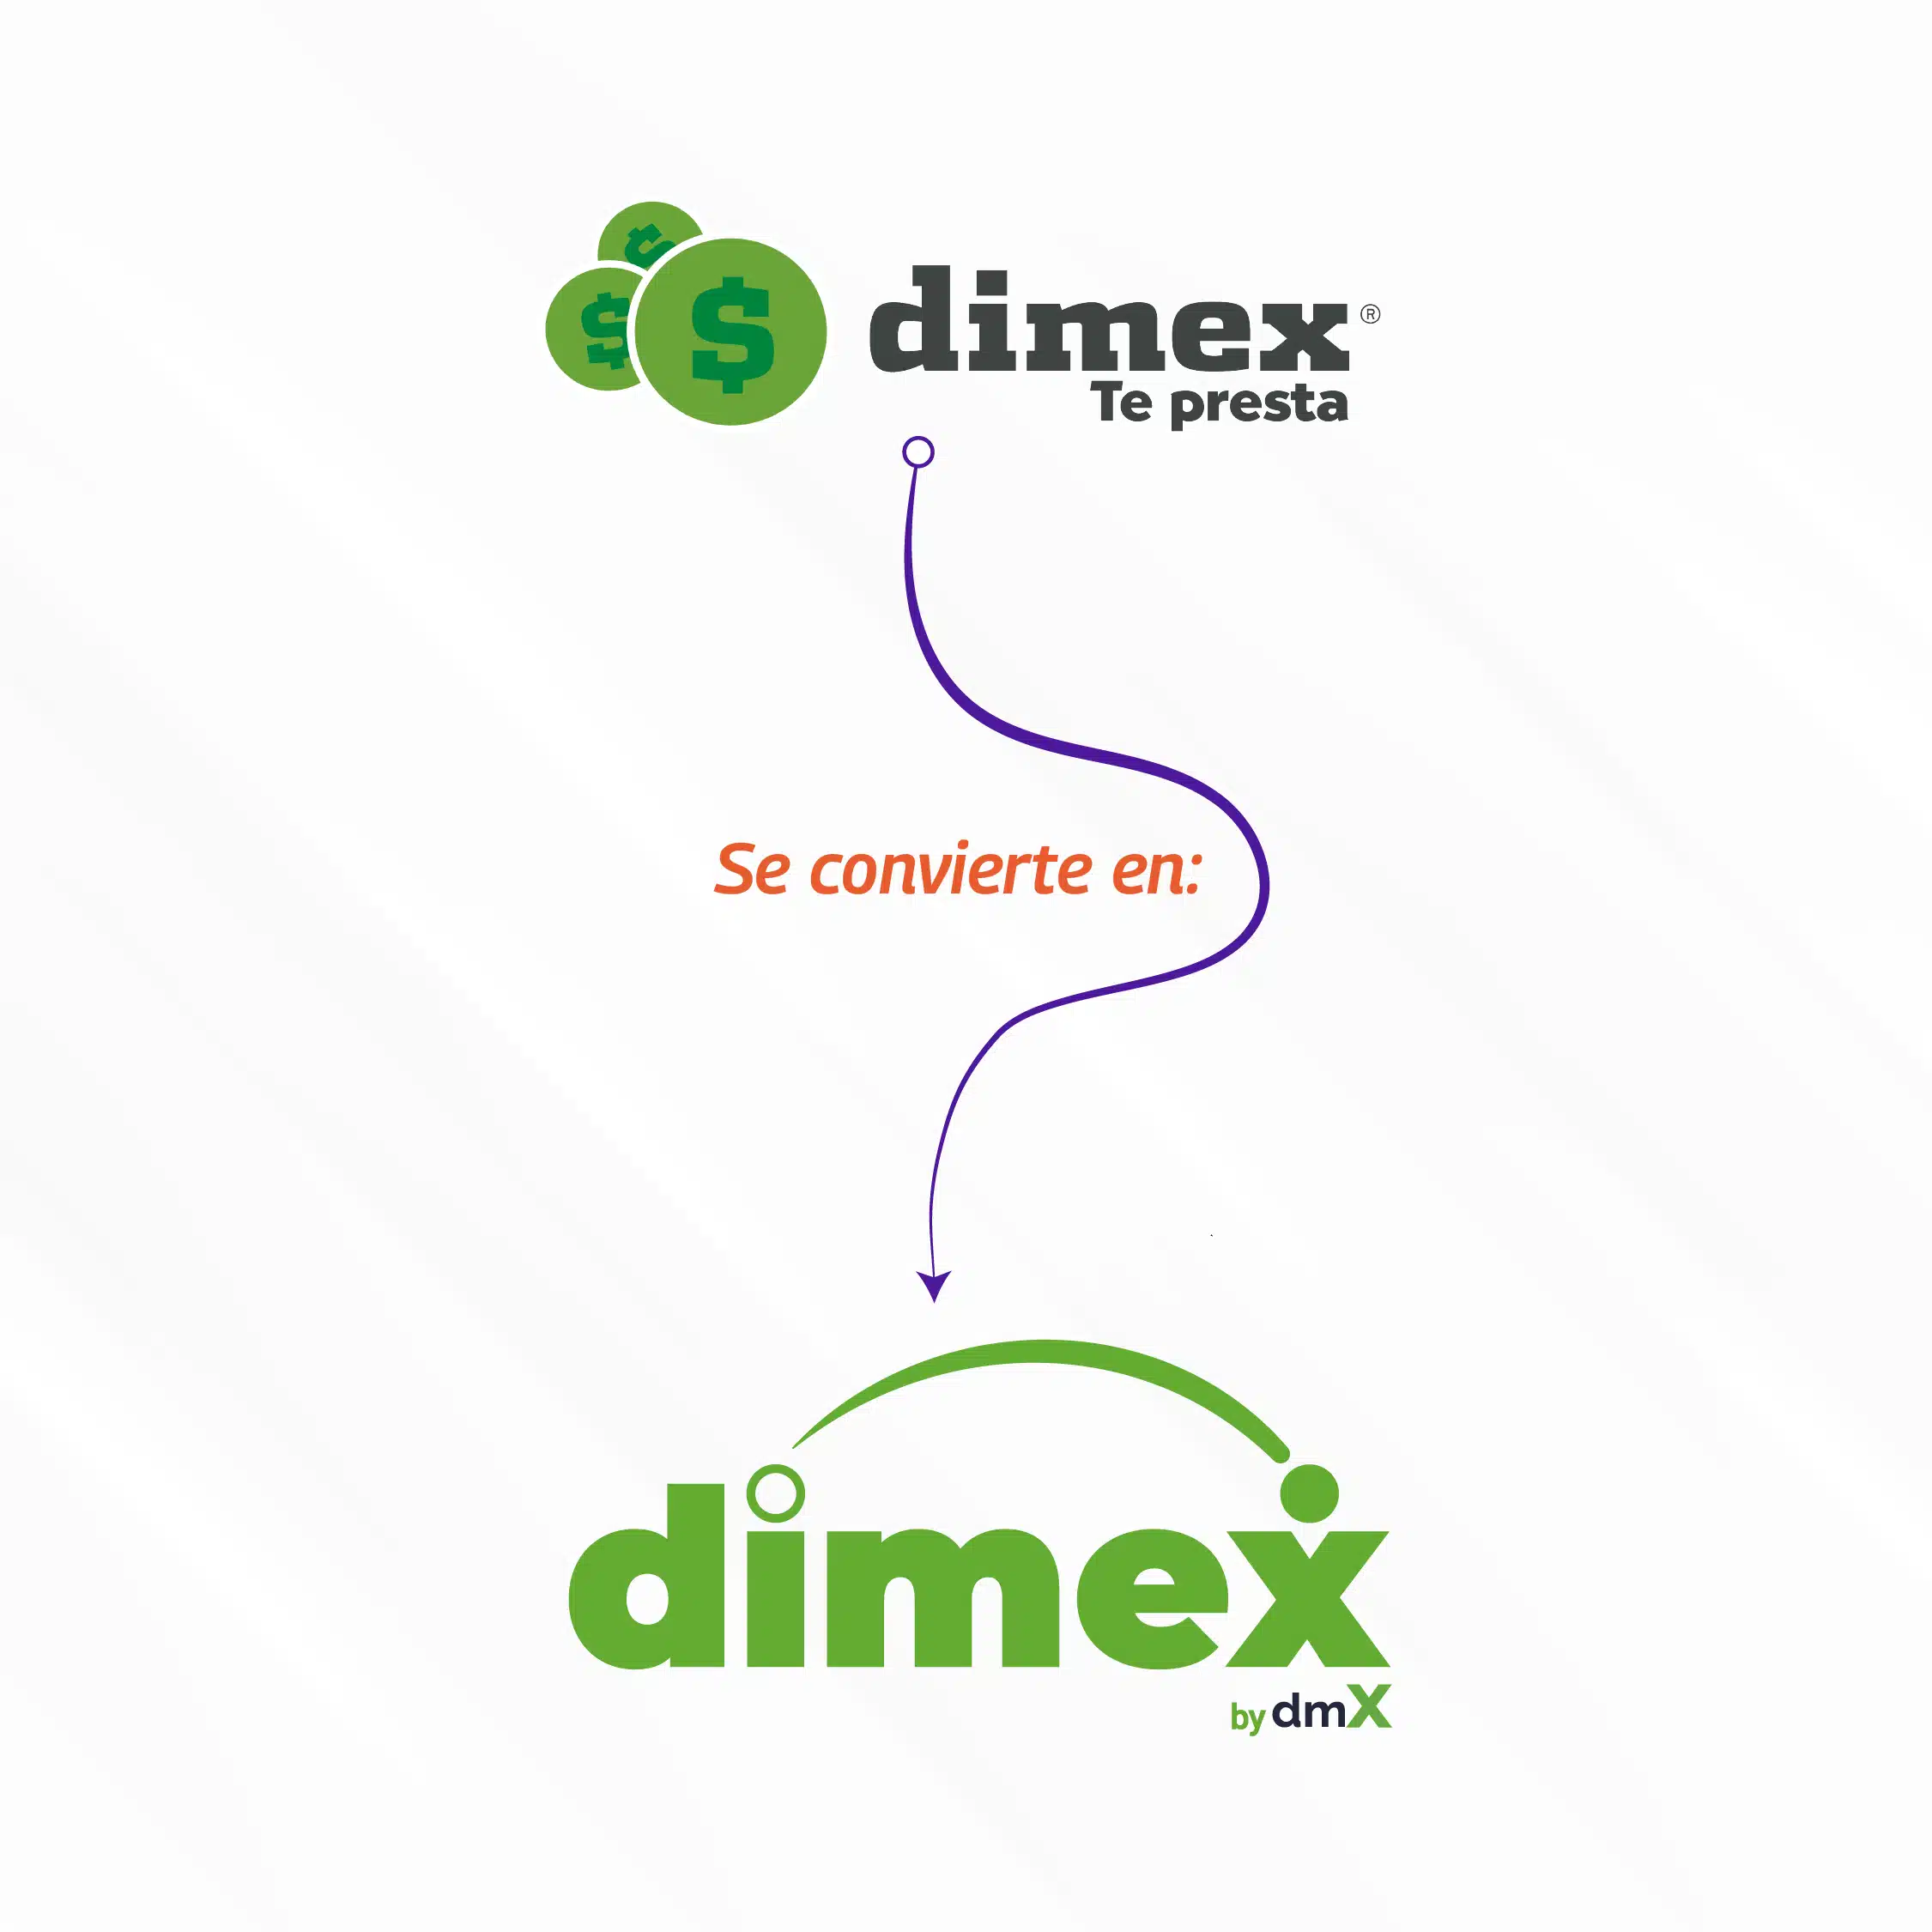 Dimex Capital, ahora Dimex, descubre los préstamos para jubilados y pensionados que ofrecemos. ¡Infórmate aquí!